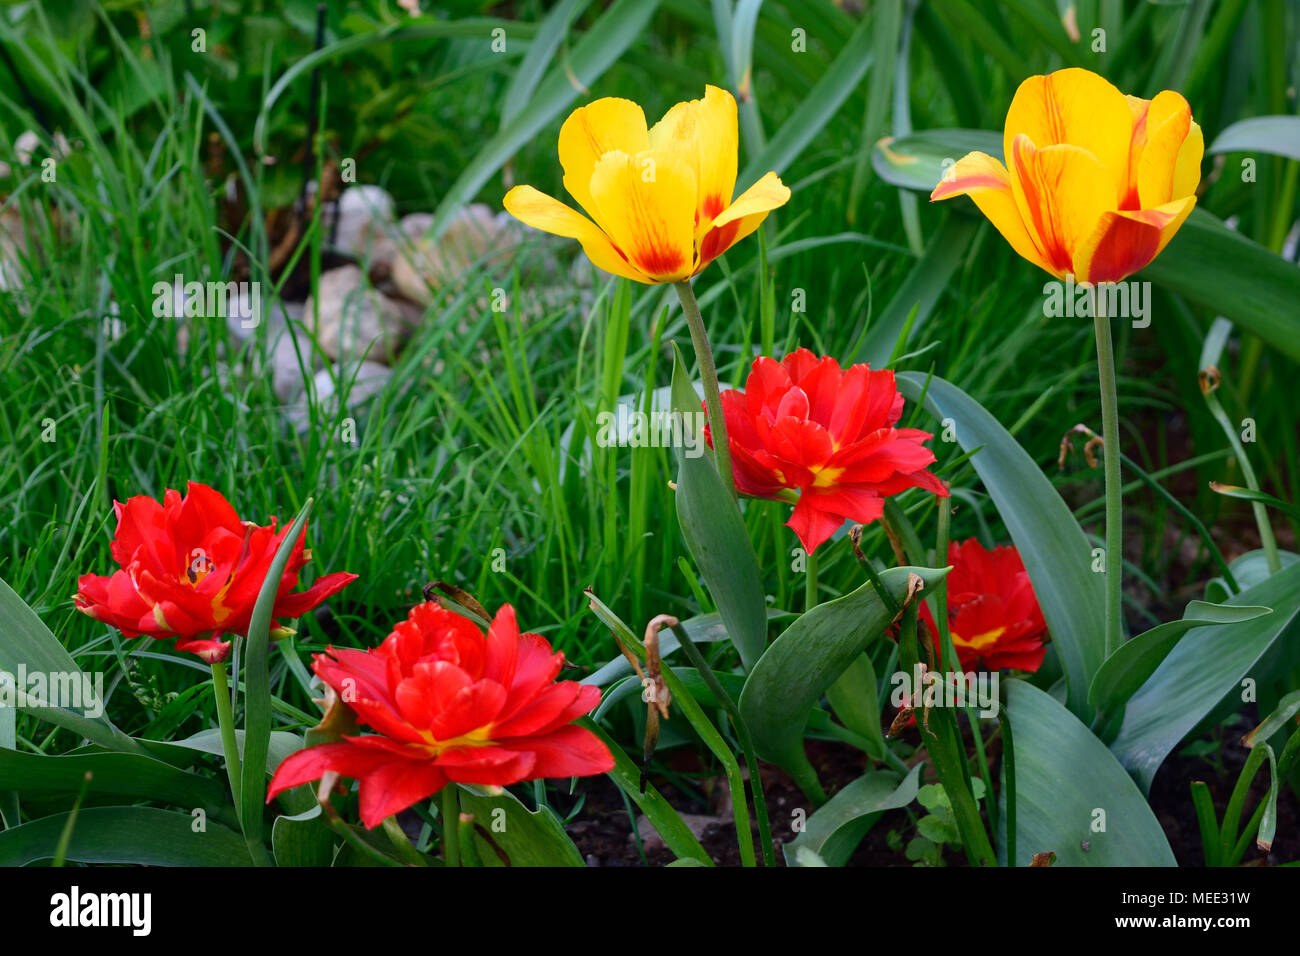 Tulipes rouges et jaunes dans le jardin. L'herbe verte floue avec de petites pierres à l'arrière-plan. Les tiges de fleurs sèches Banque D'Images